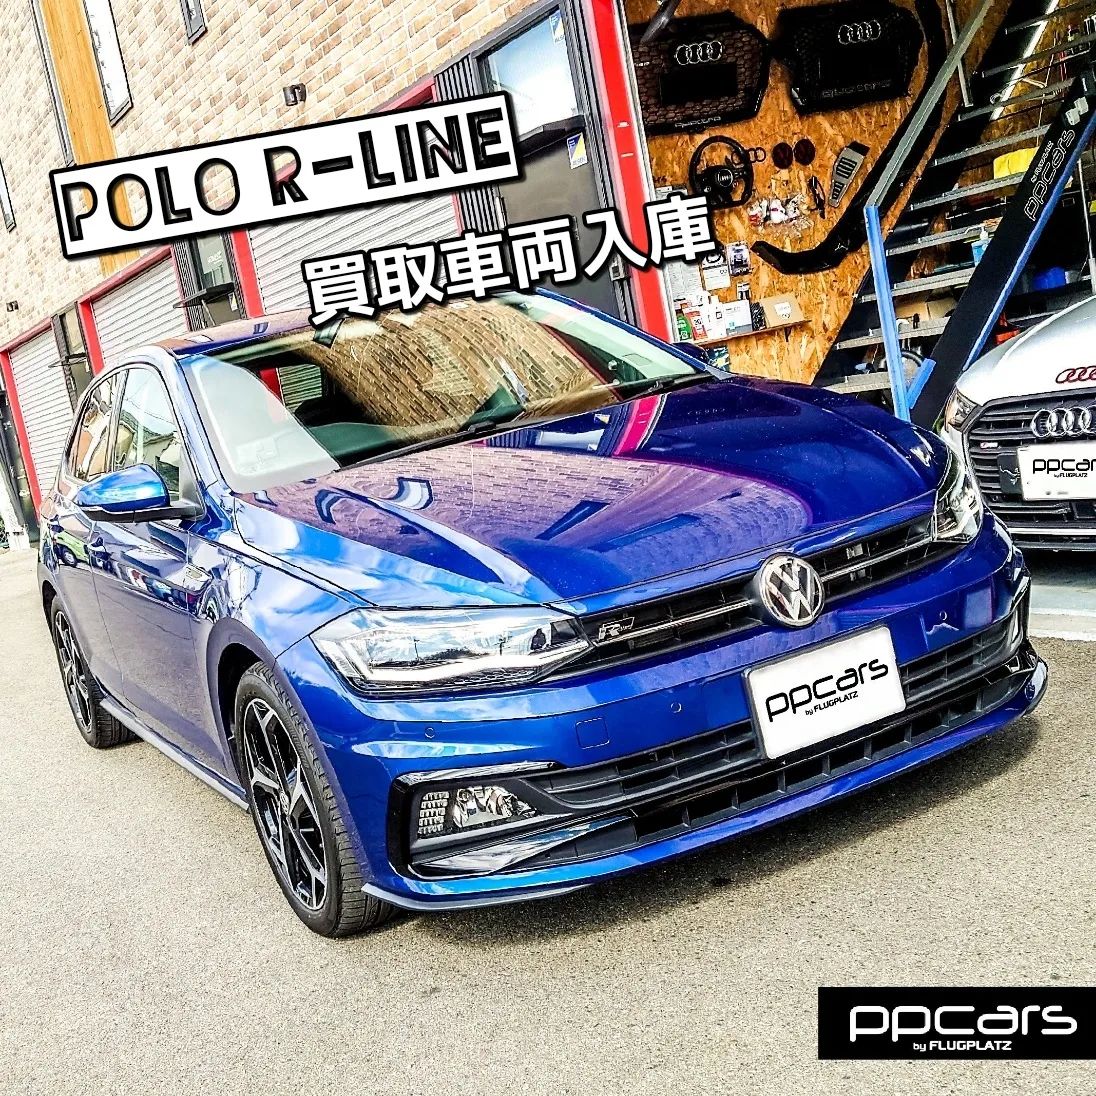 Polo (AW) R-Line x 買取車両入庫